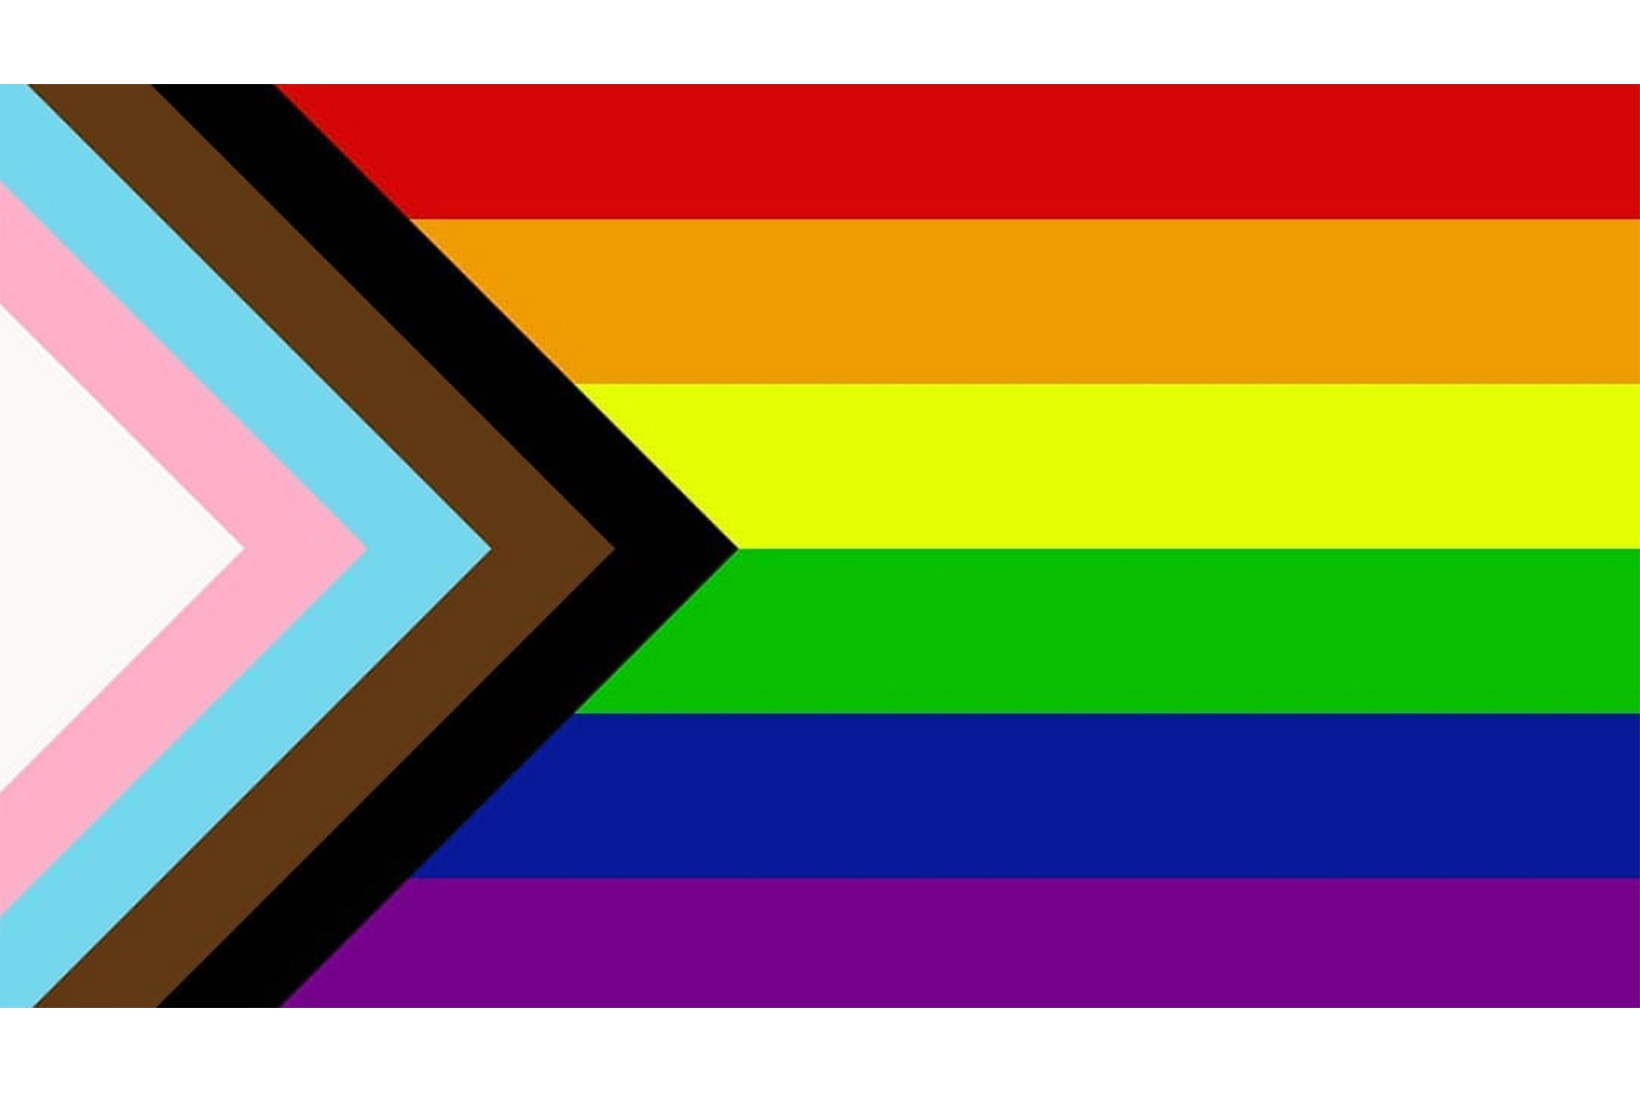 Pride Flag Redesign Daniel Quasar june 2018 chevron inclusion progression